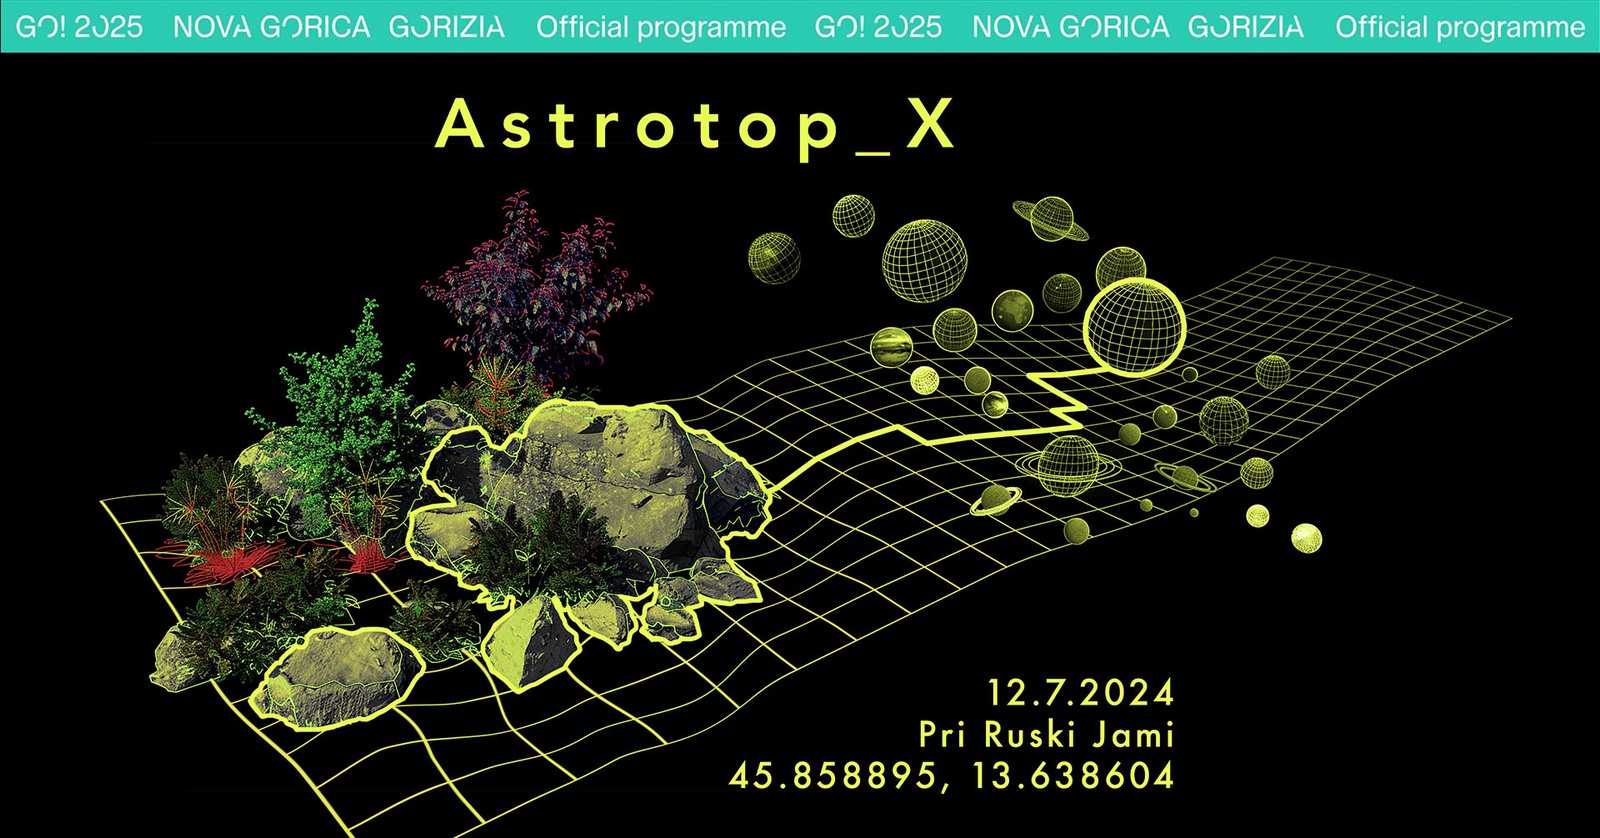 Astrotop_X. Med astronomijo, umetnostjo in ekologijo.